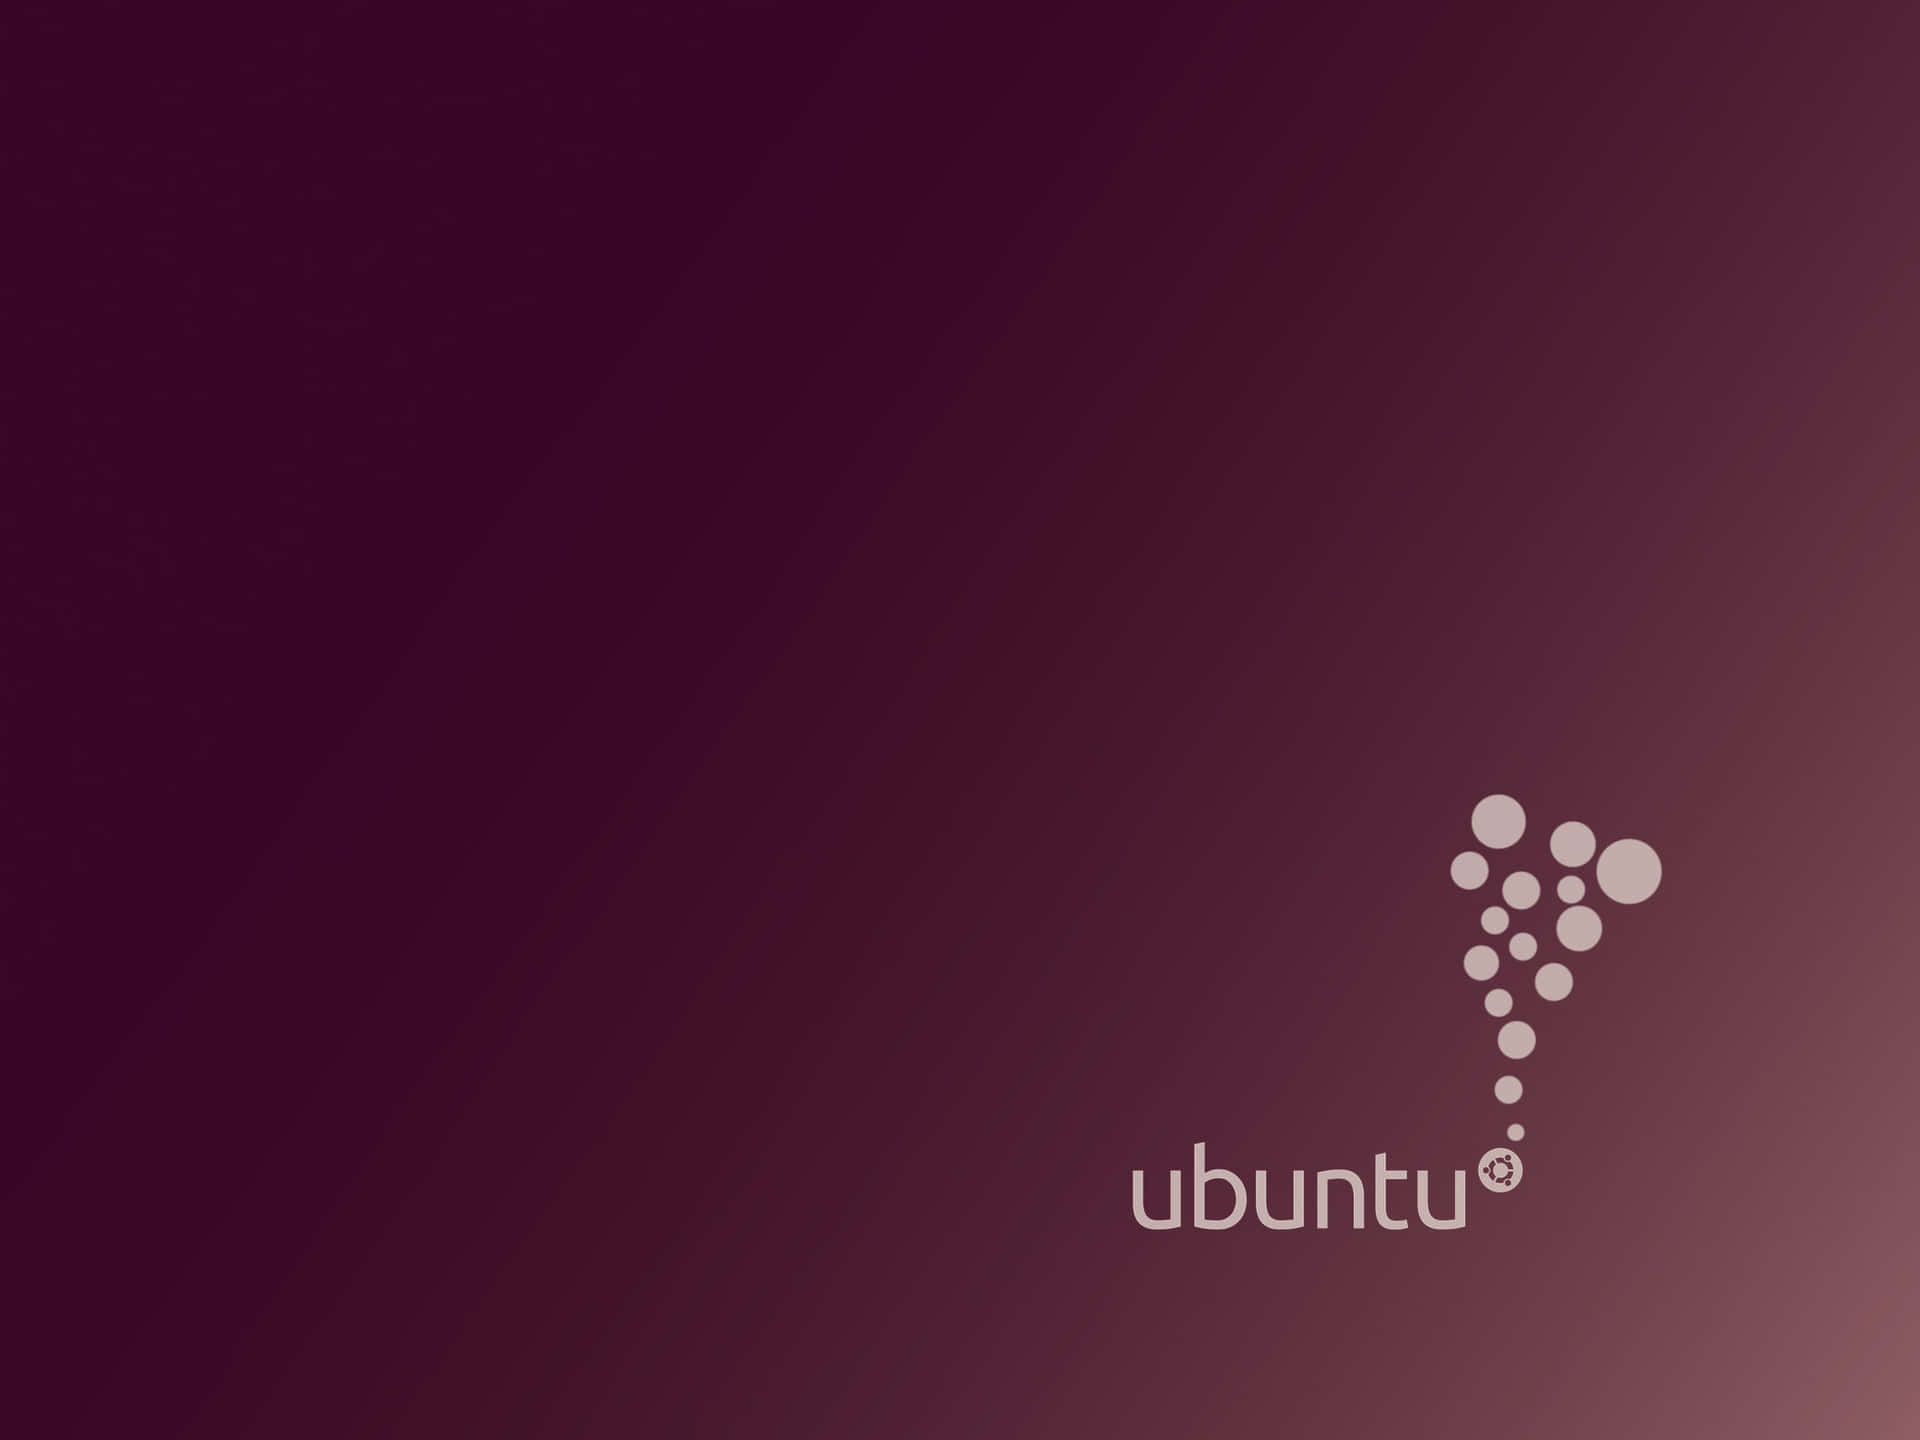 Obténel Máximo Provecho De Tu Experiencia En Ubuntu